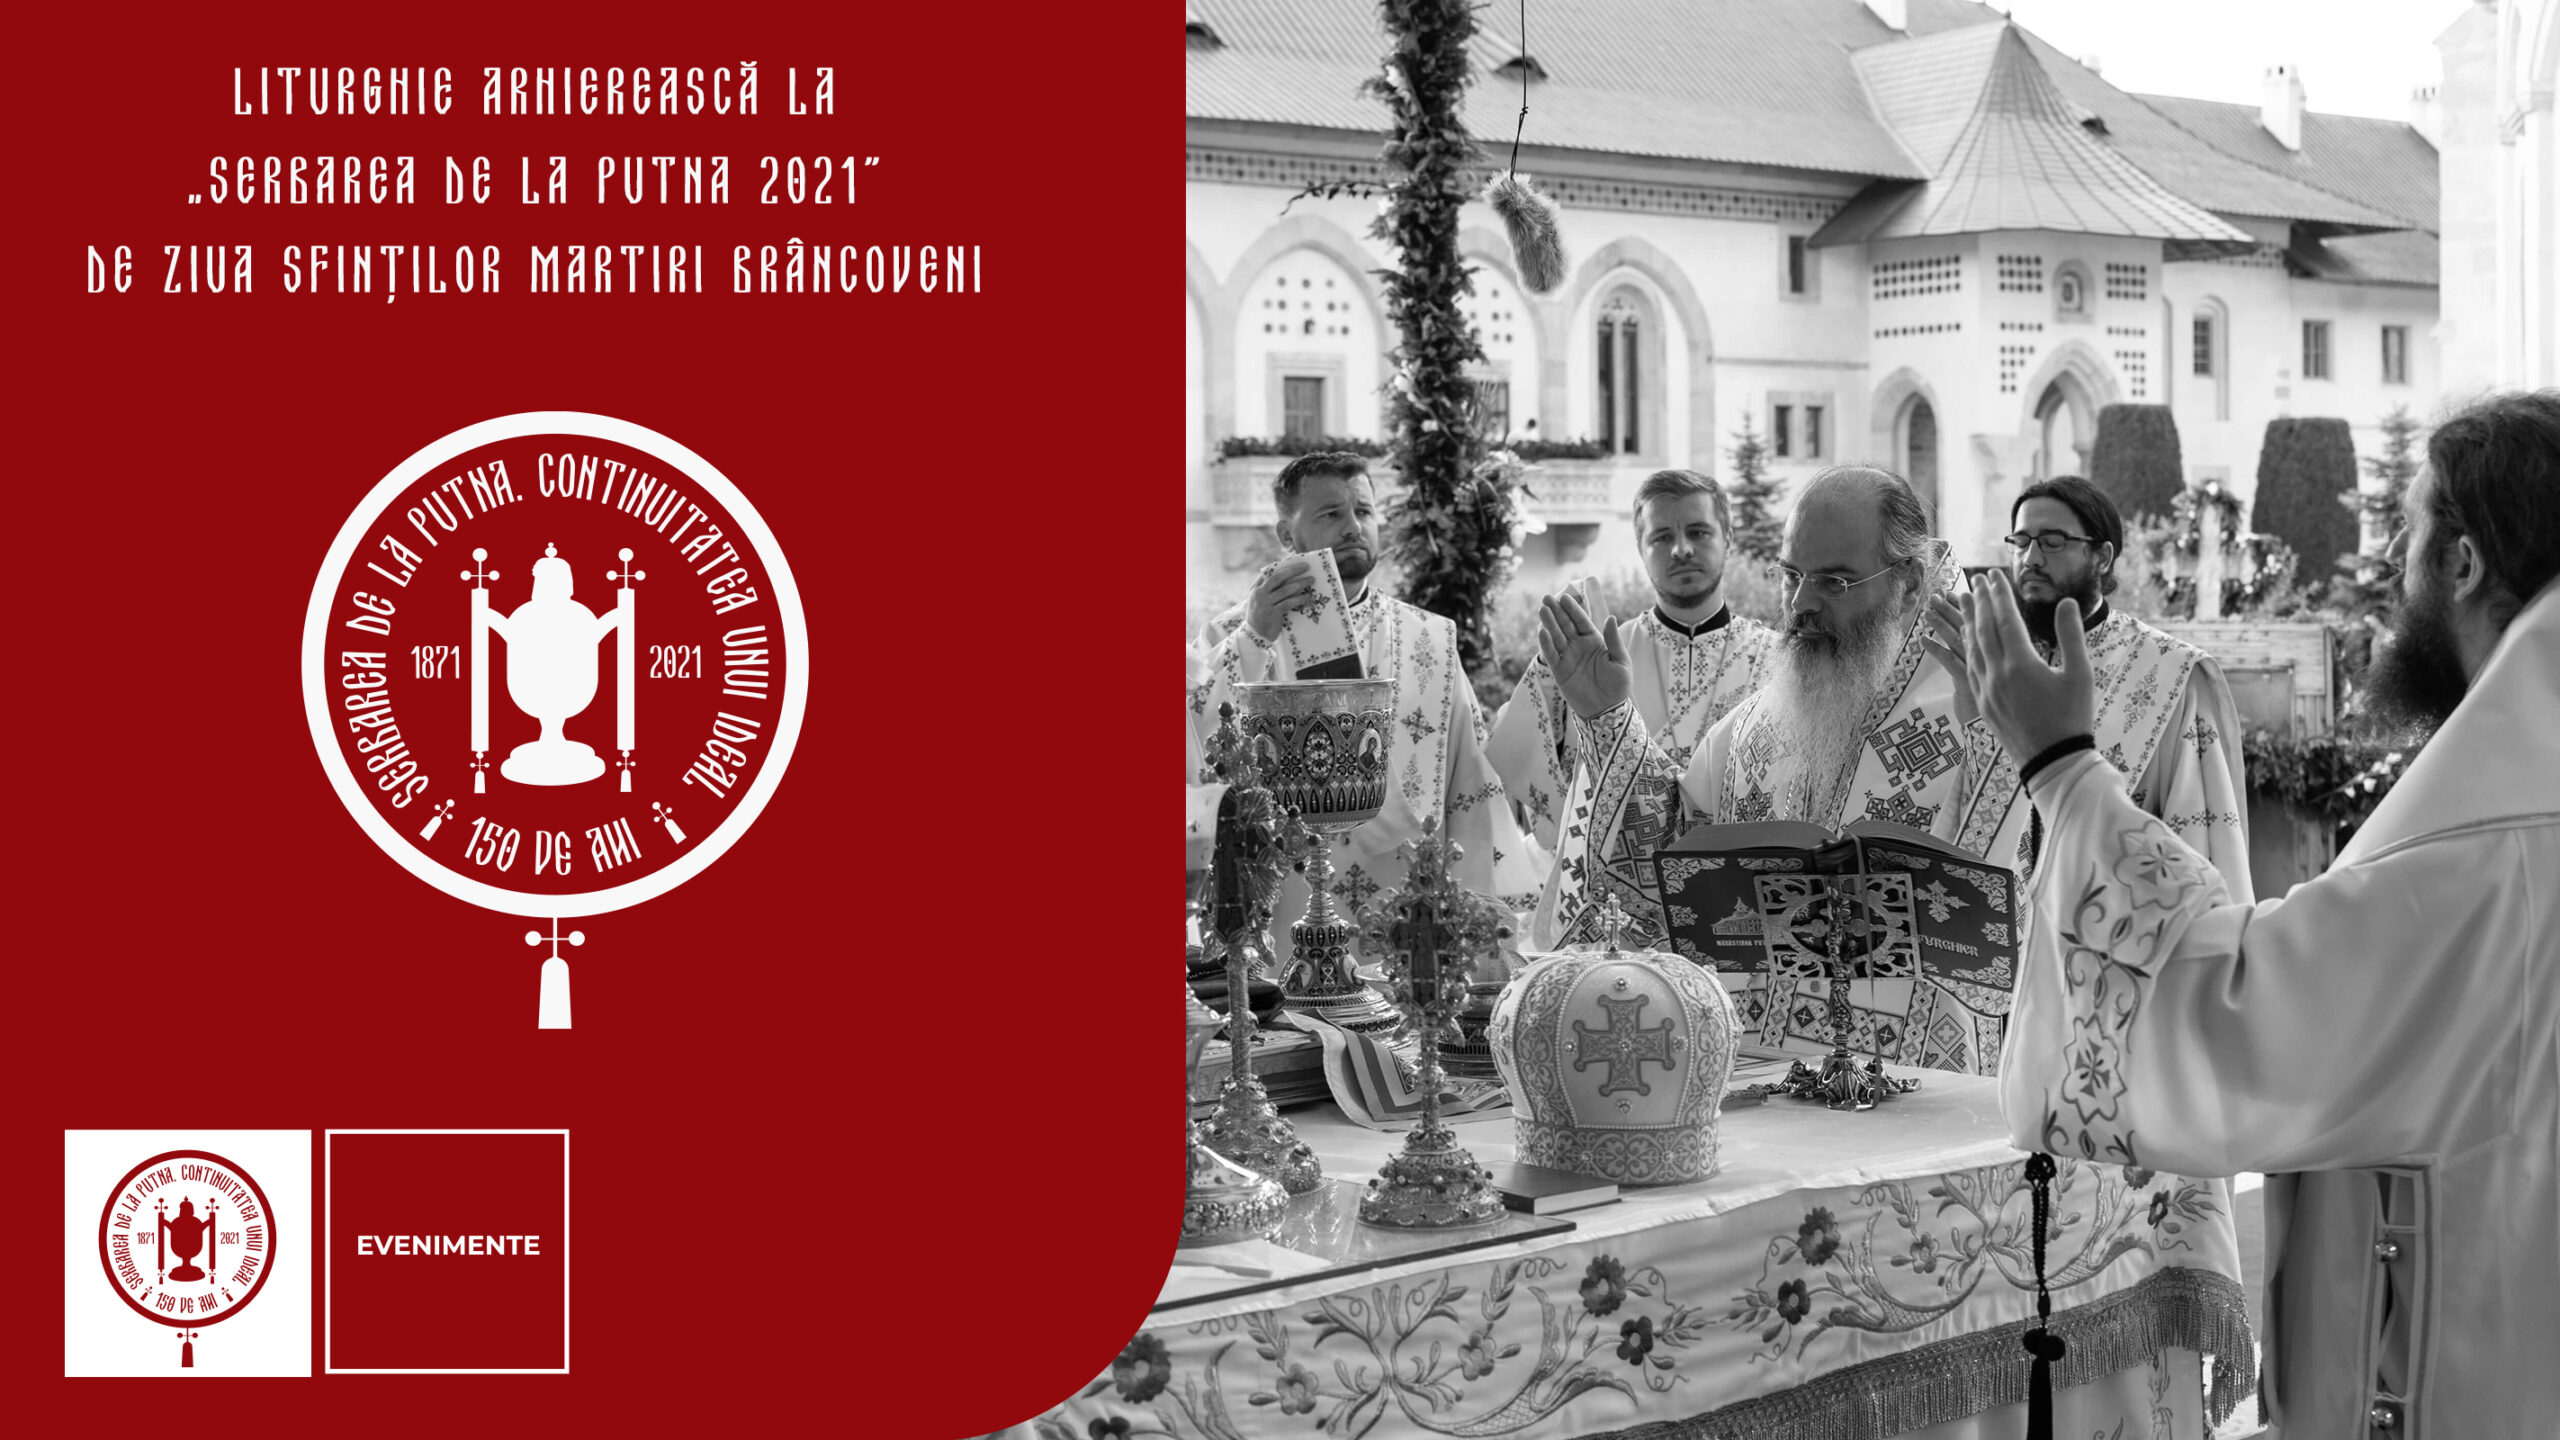 Liturghie Arhierească la „Serbarea de la Putna 2021” de ziua Sfinților Martiri Brâncoveni